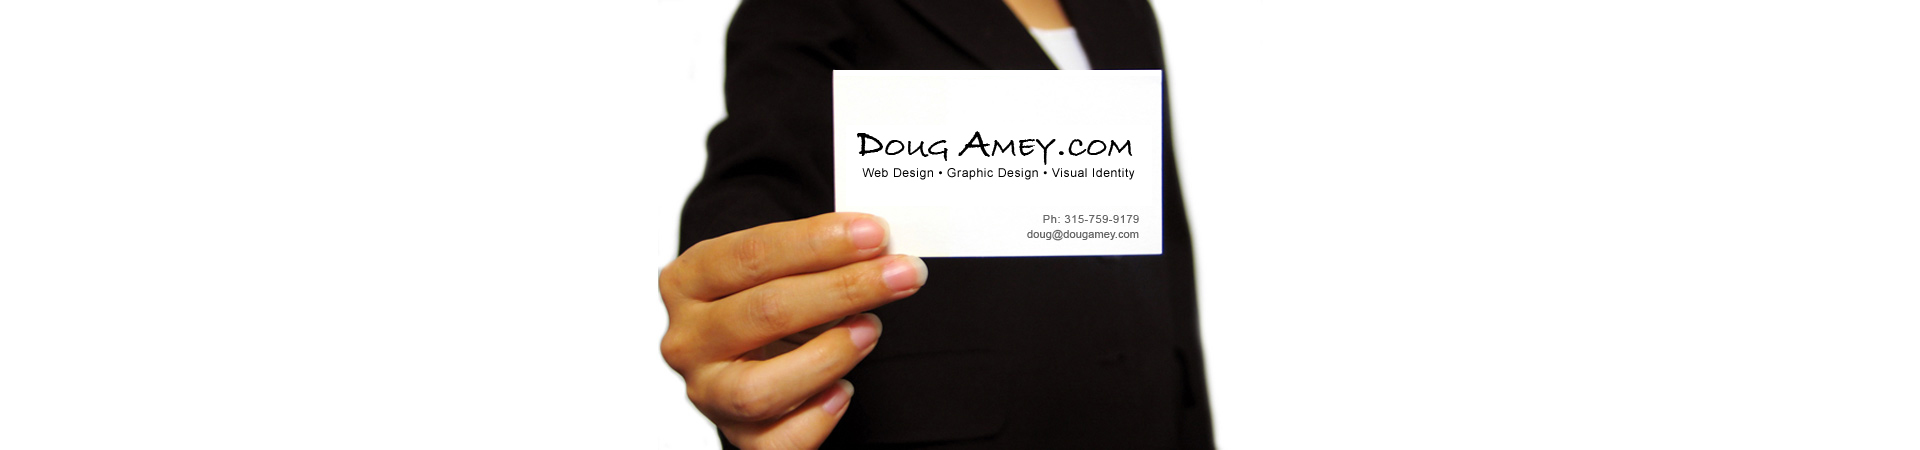 Doug Amey Web Design